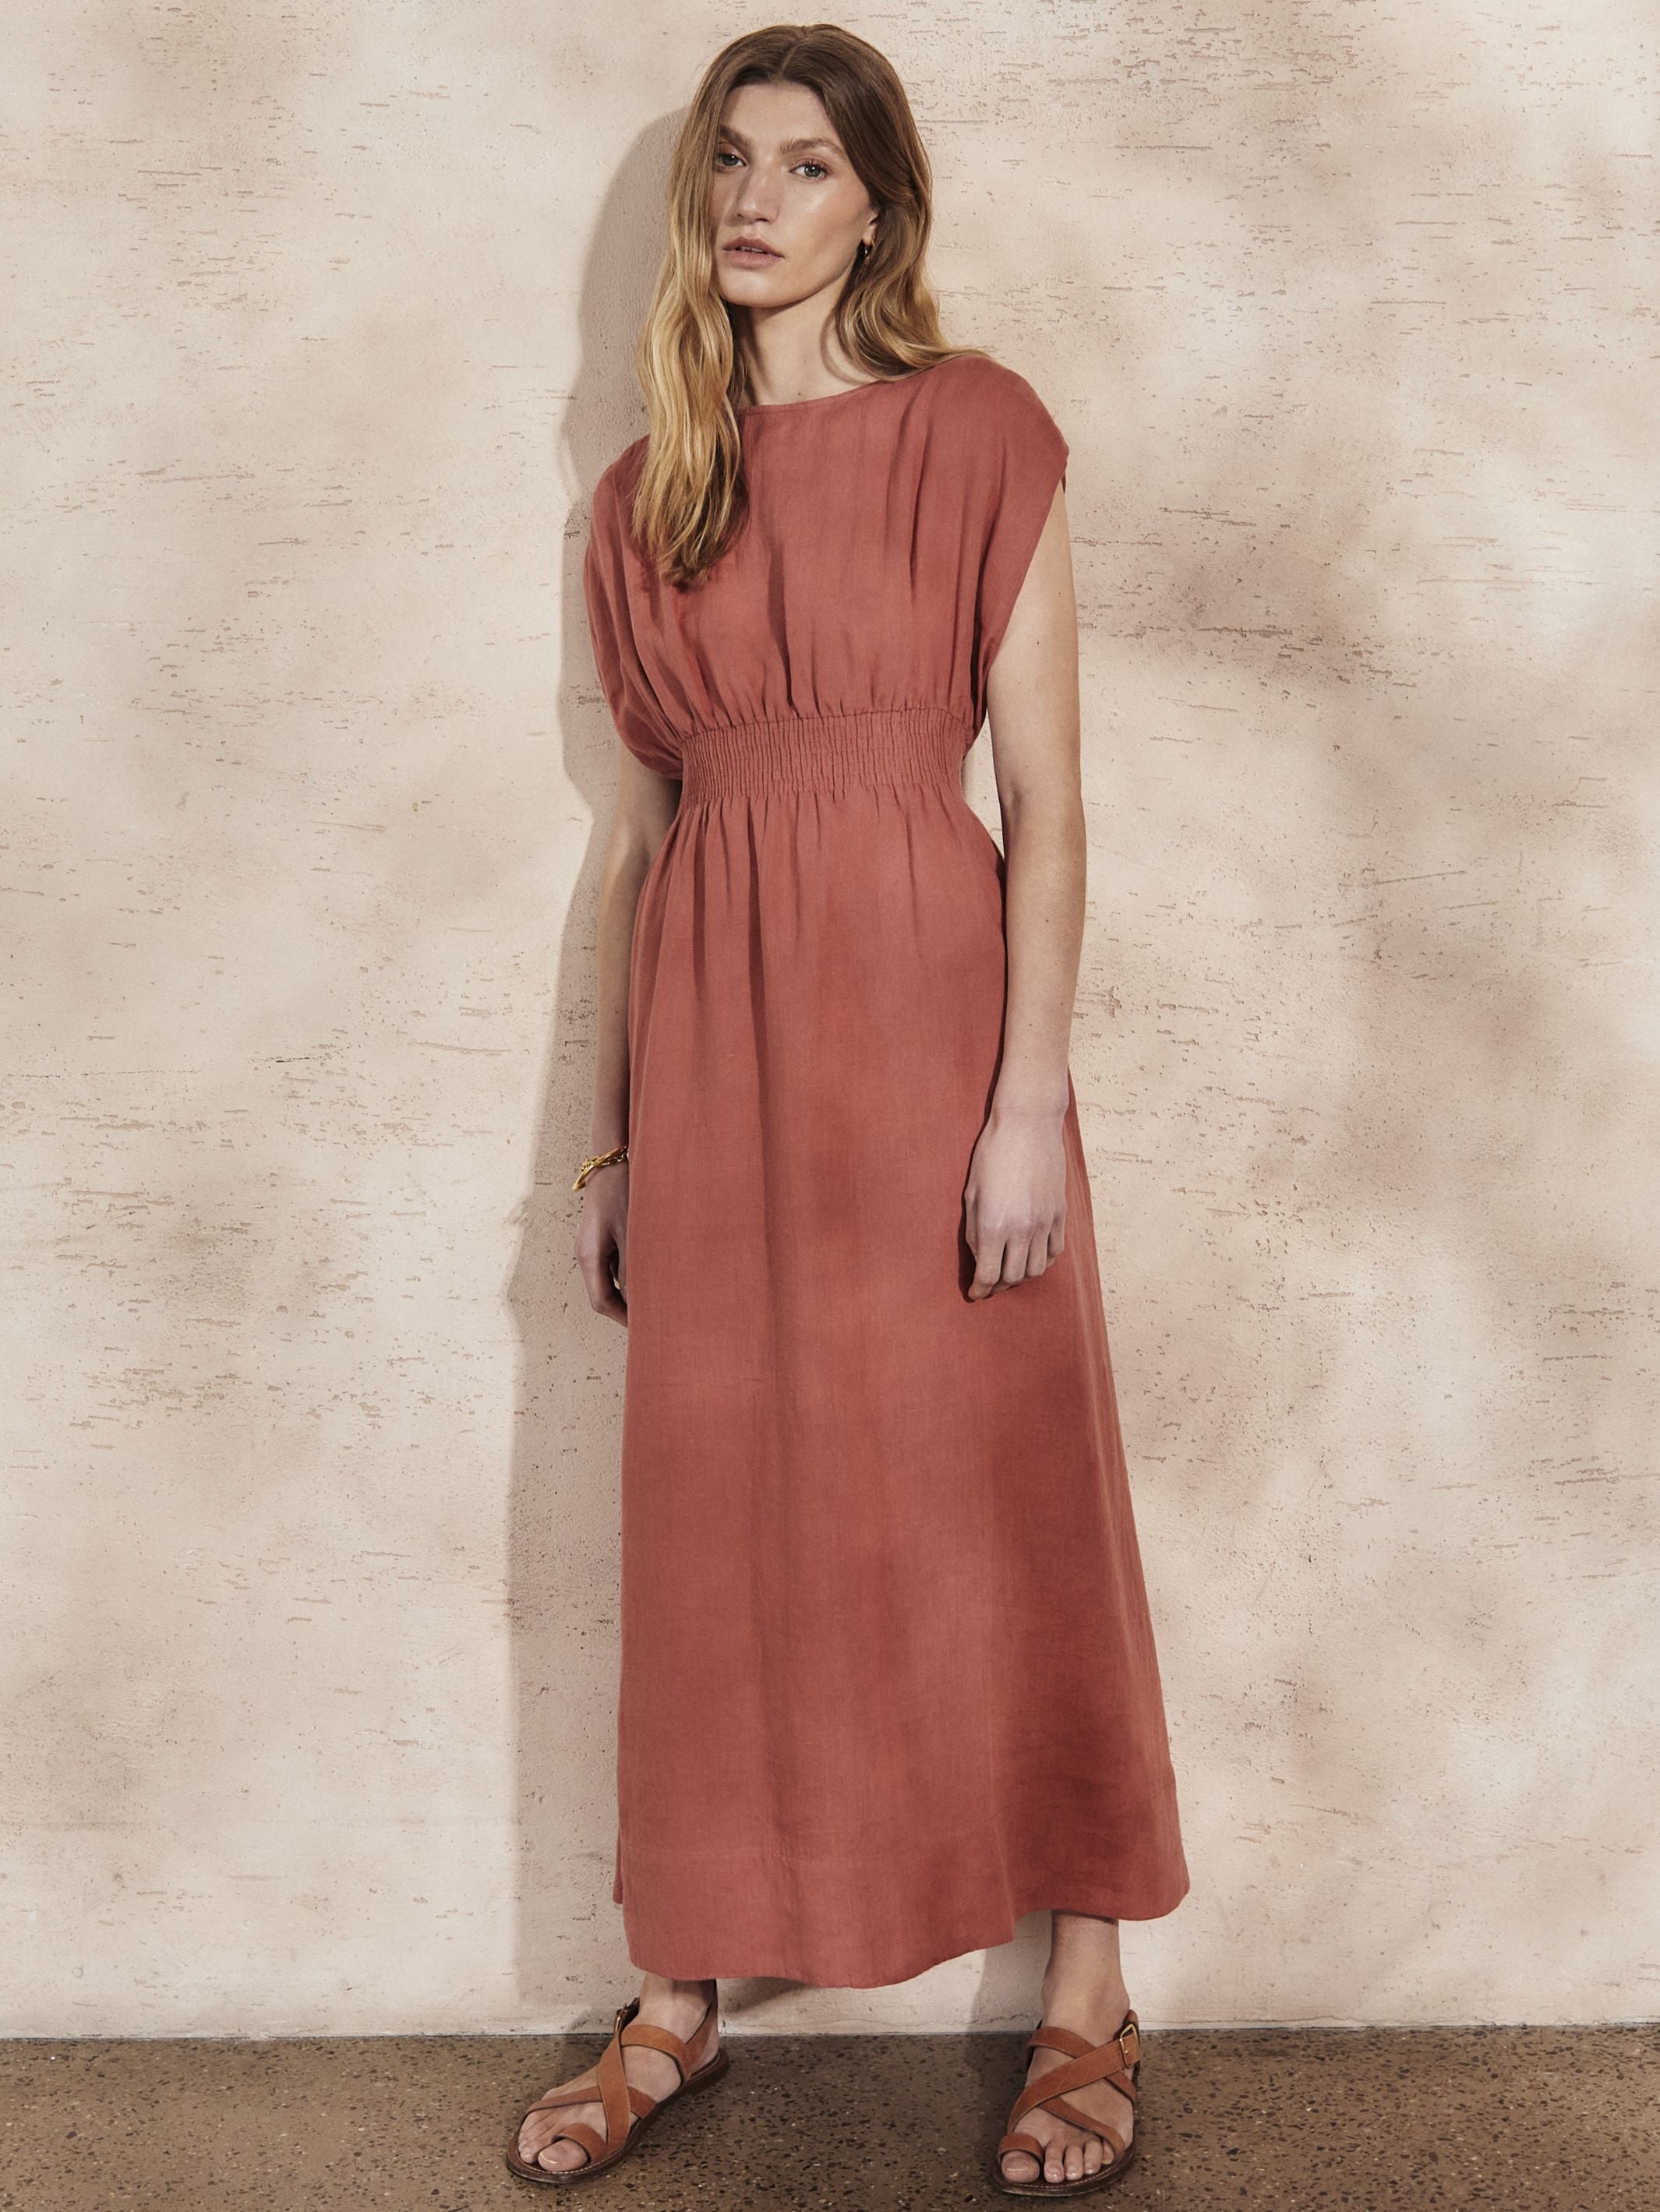 SOFIA - Brick Linen Dress - Mondo Corsini